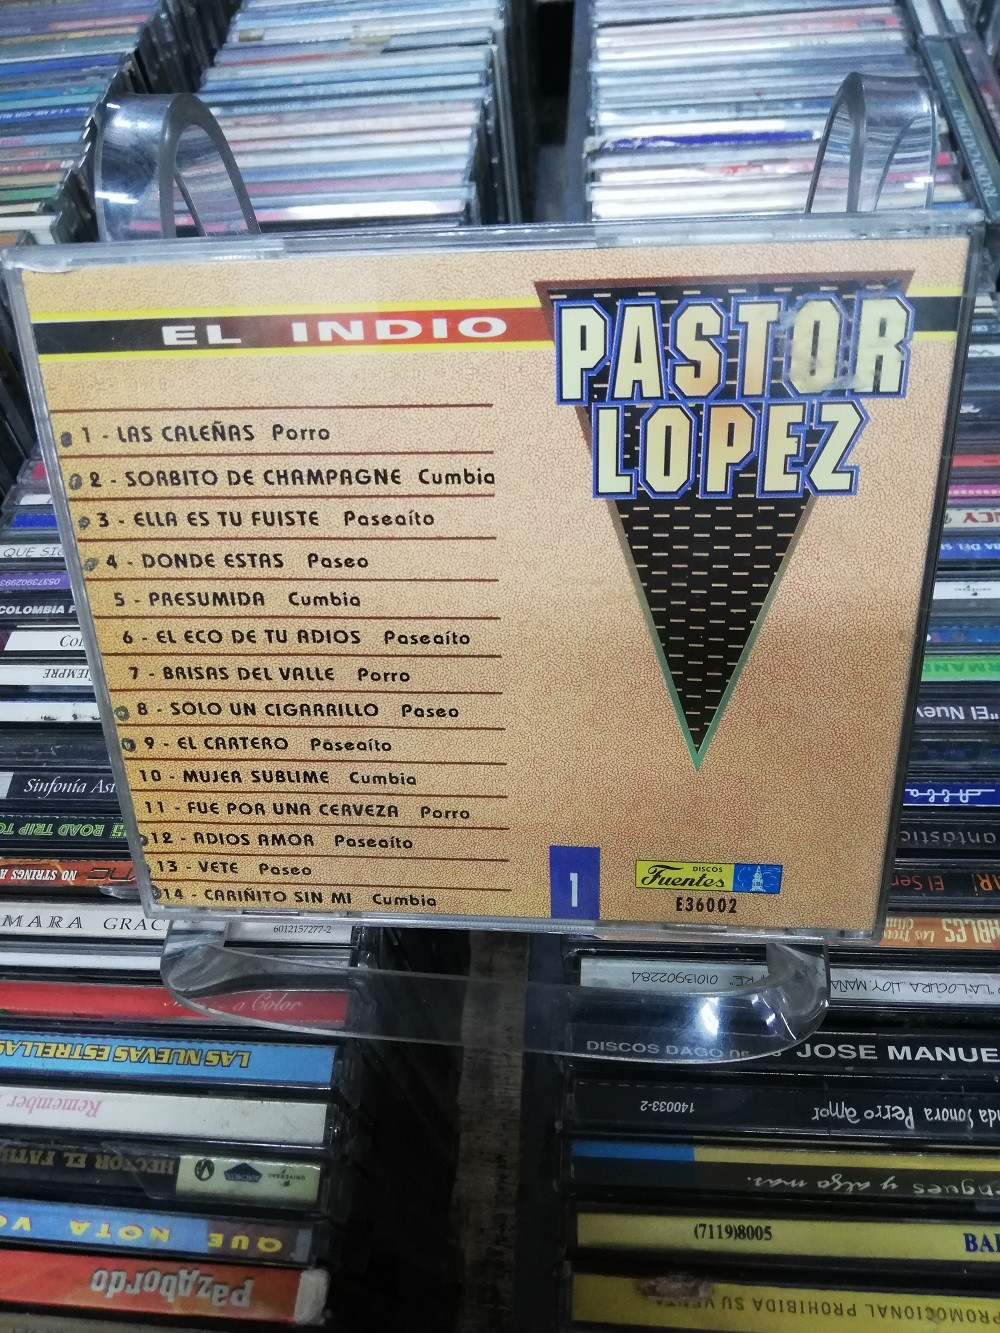 Imagen CD EL INDIO PASTOR LOPEZ - SUS GRANDES EXITOS 2